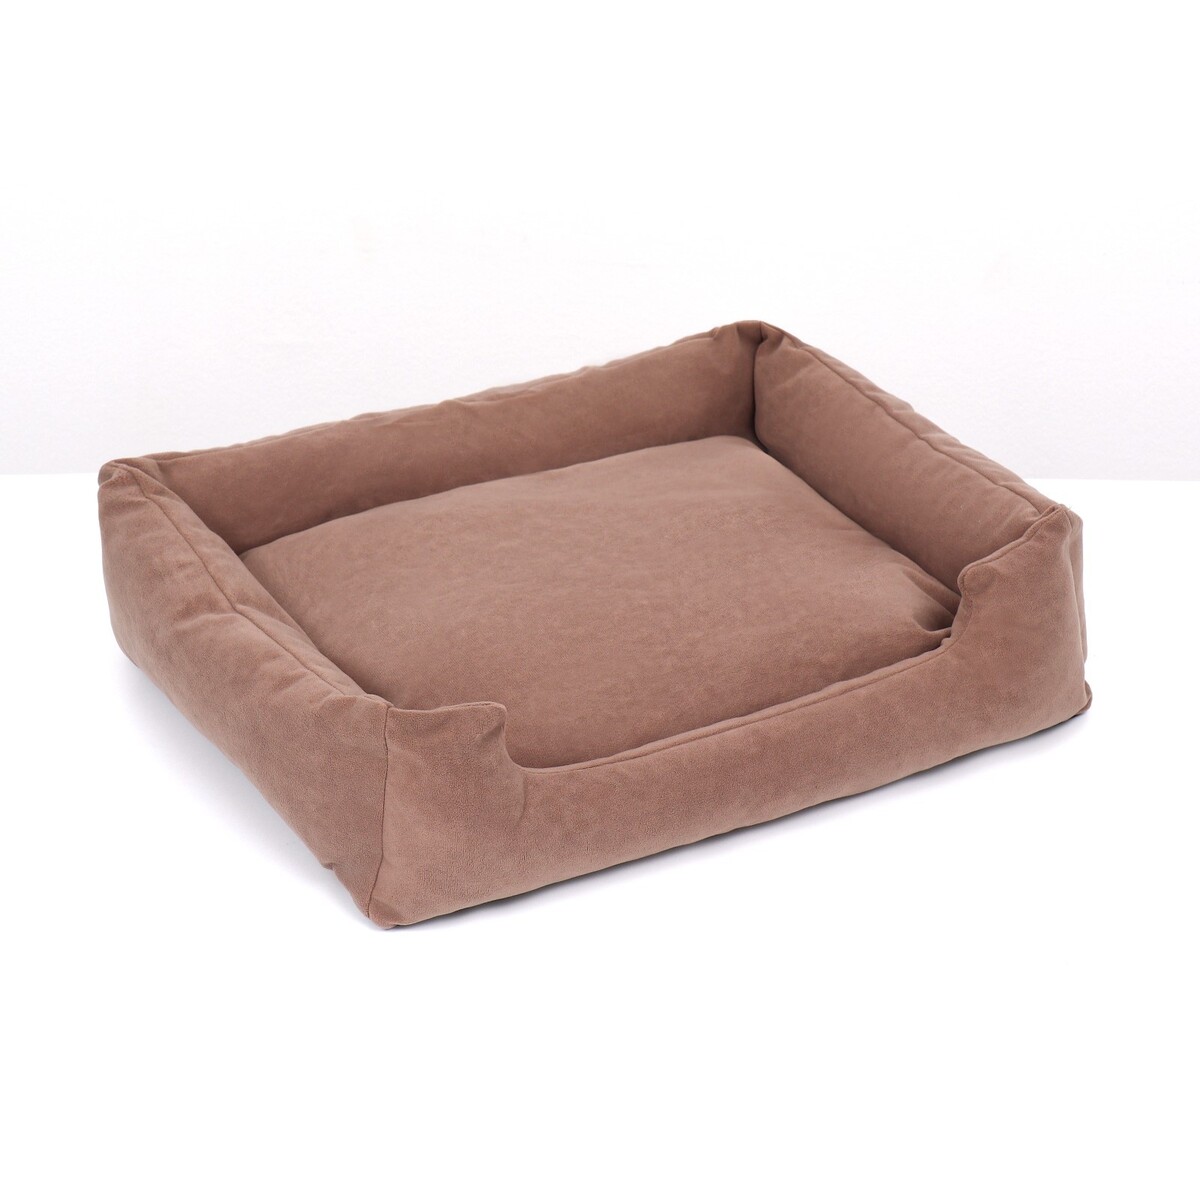 Лежанка-диван, 53 х 42 х 11 см, коричневая лежанка диван 53 х 42 х 11 см коричневая